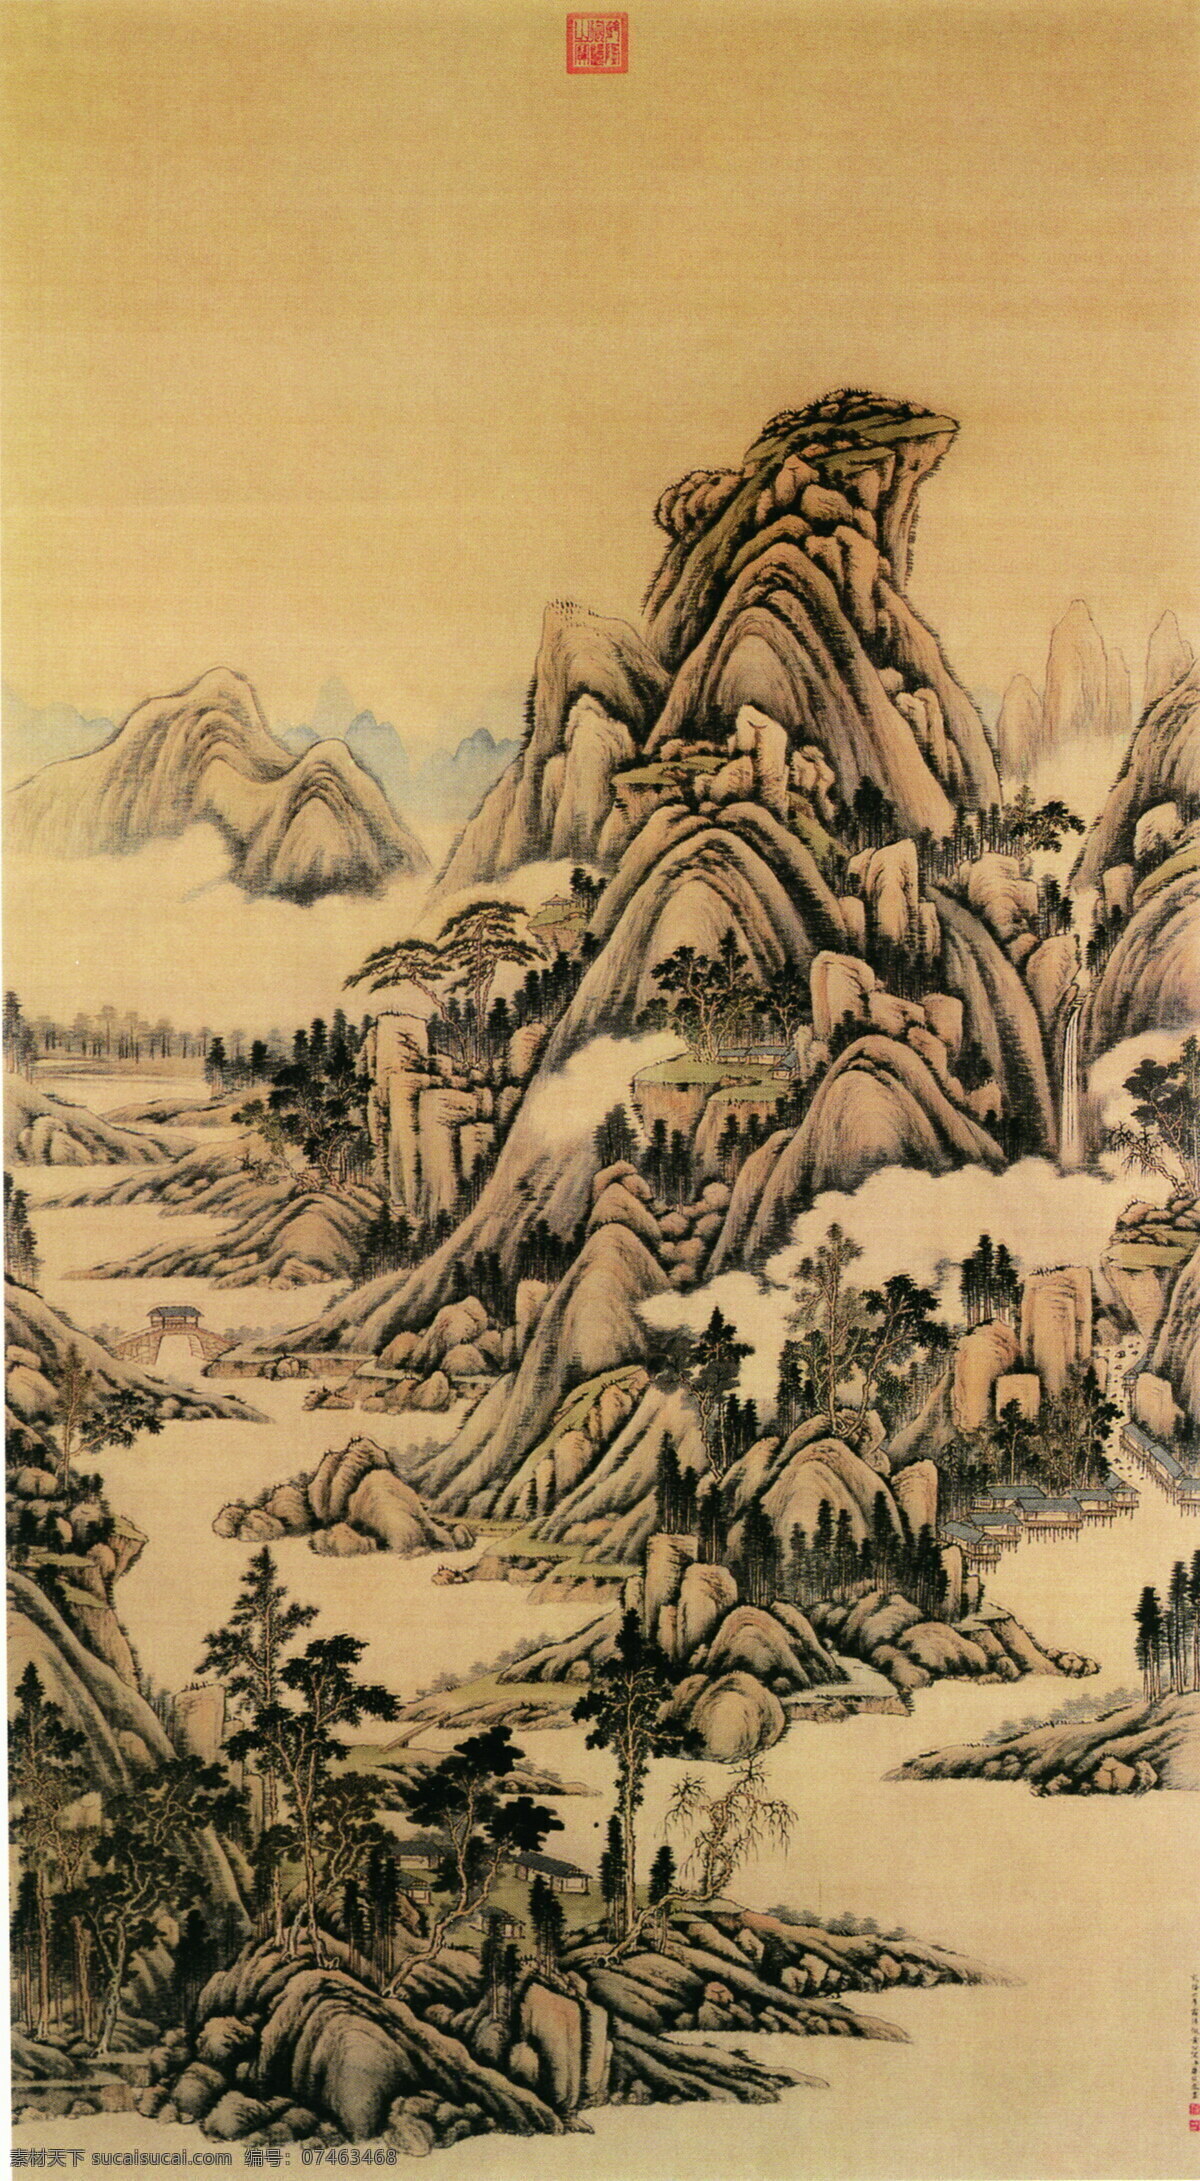 中国 古典 绘画 艺术设计 彩墨画 工笔 古代名画 古代山水 国画 美术 牡丹 人物 山水 重彩 绶带 现代 中国画 工笔重彩画 文化艺术